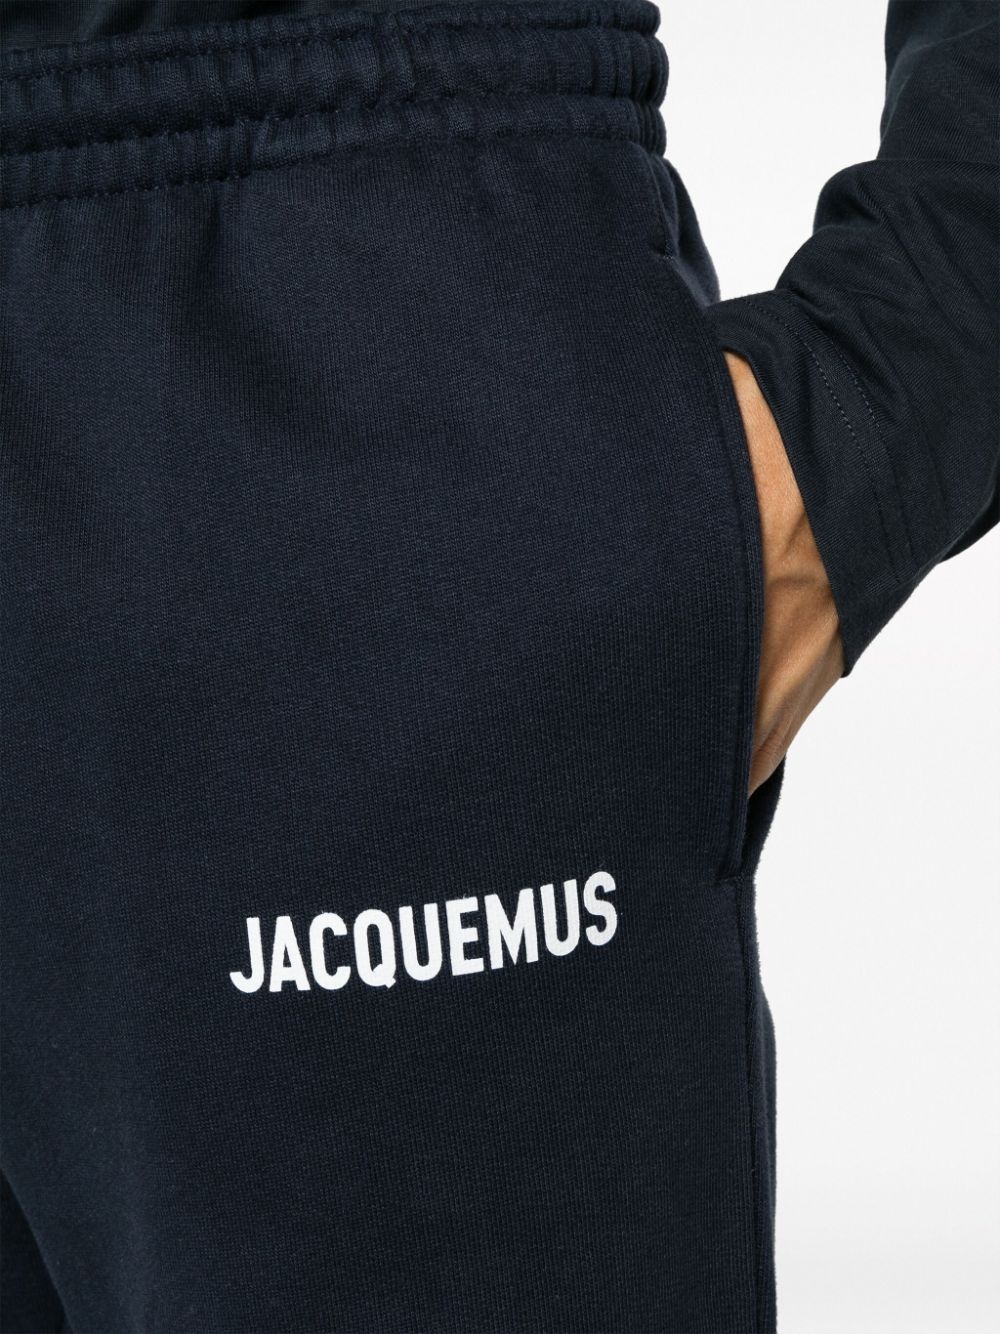 Le Jogging Jacquemus track pants - 6